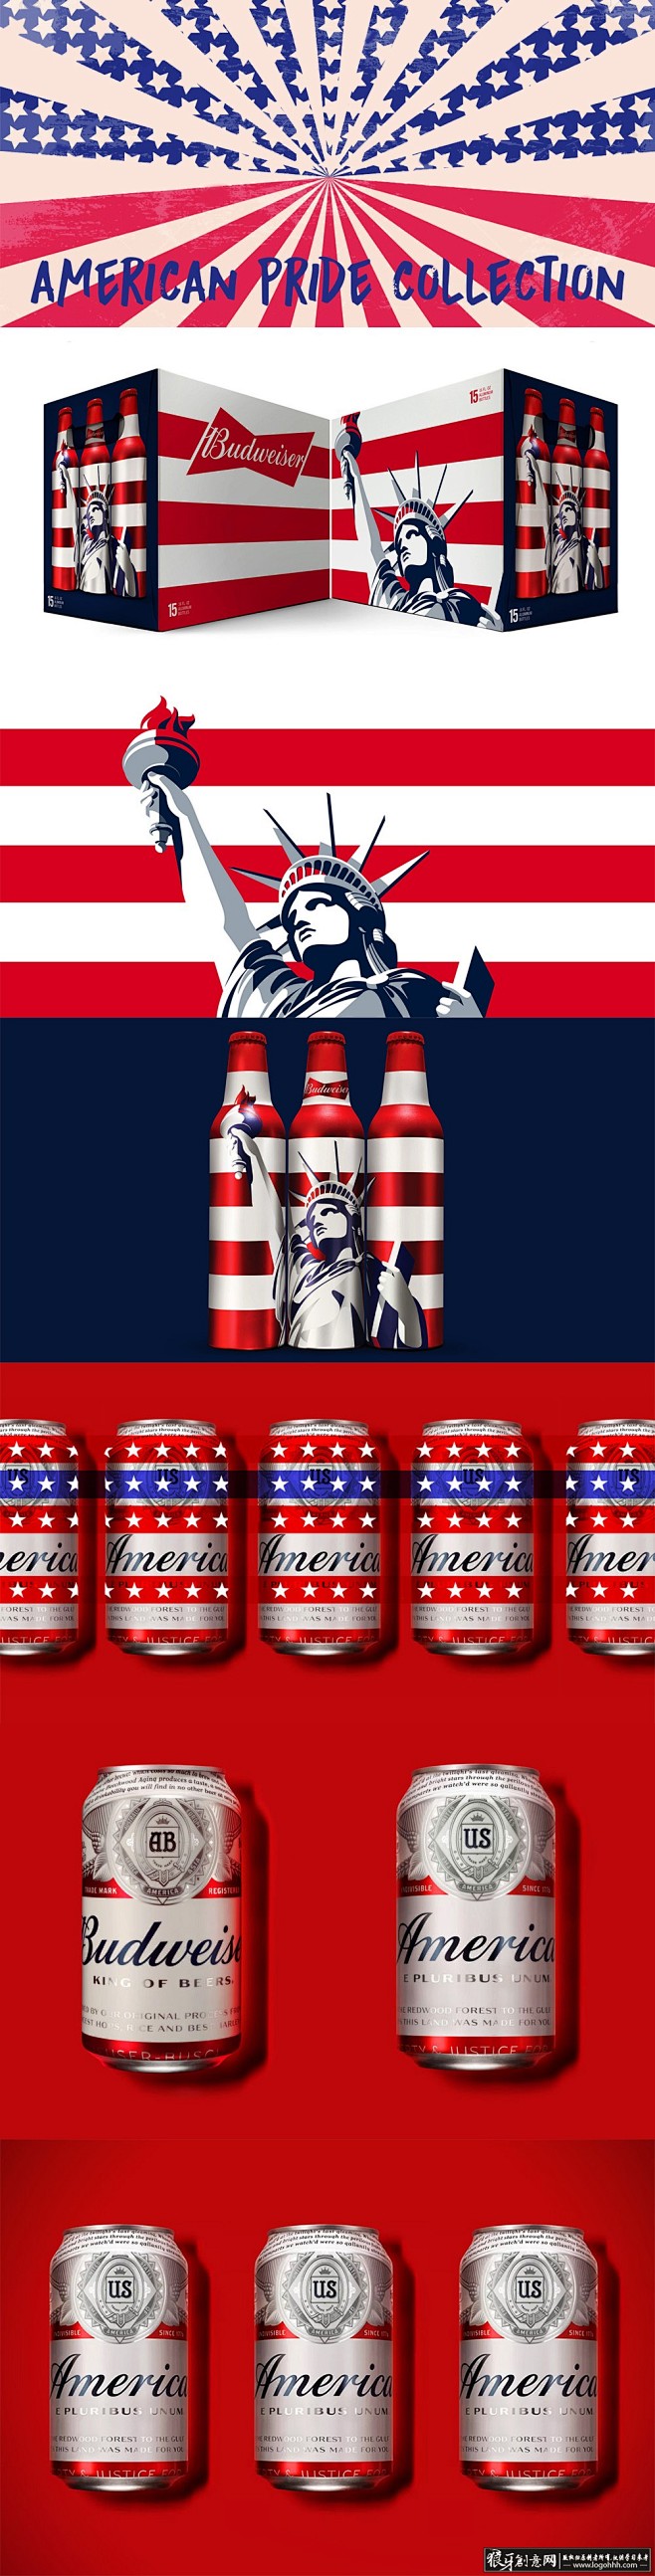 包装设计灵感 美国啤酒 美国自由女神 创...